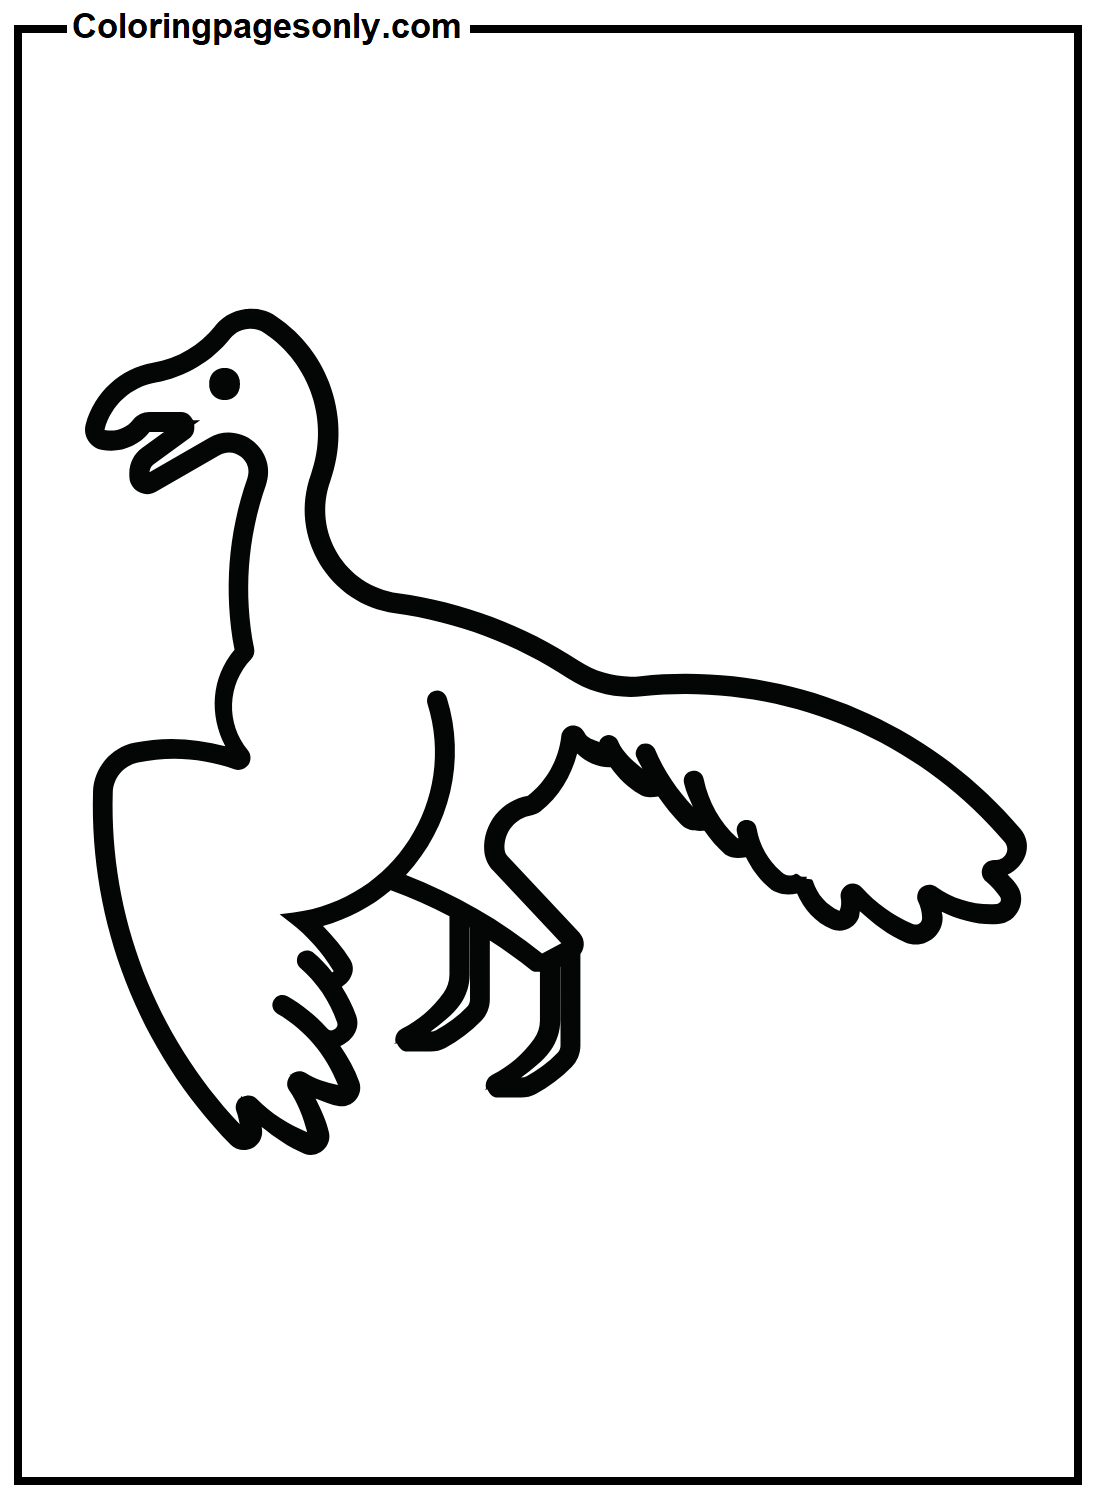 Página para colorir gratuita do Archaeopteryx